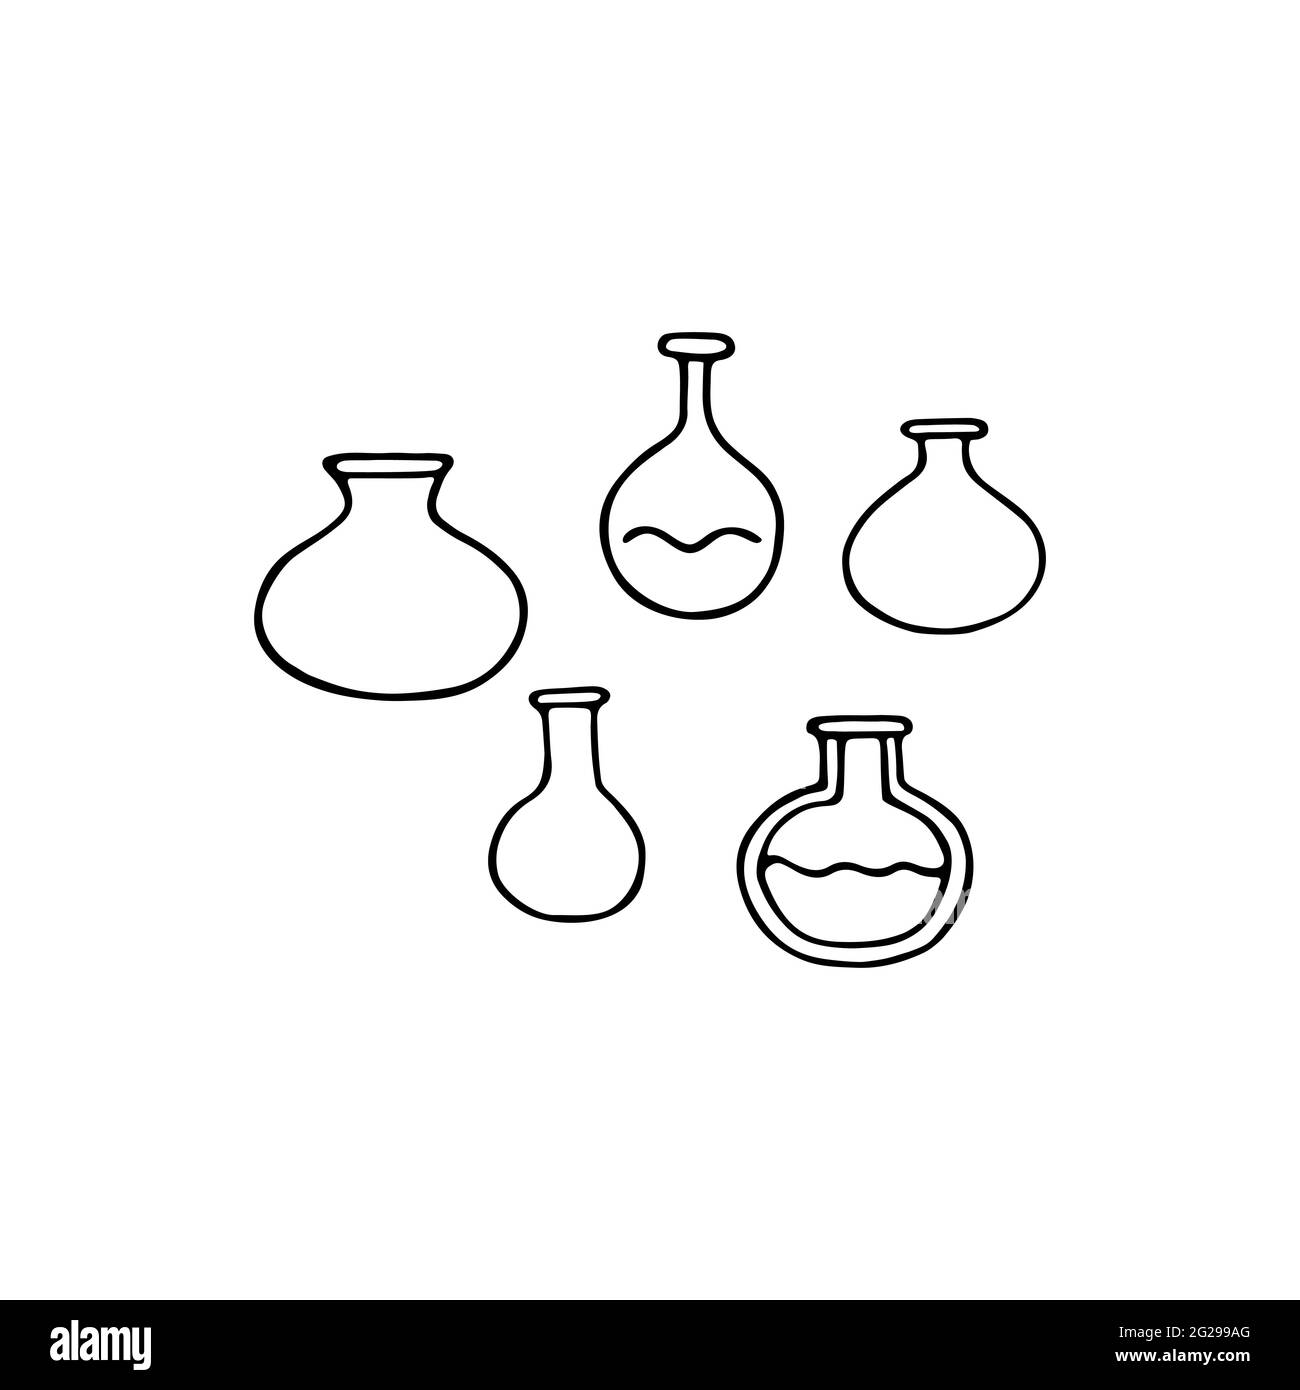 Doodle-Set für medizinische Reagenzgläser. Handgezeichnete Kolben isoliert auf weißem Hintergrund. Chemisches Glas für Medizin, Wissenschaft, Bildung, Schule, Labor Stock Vektor